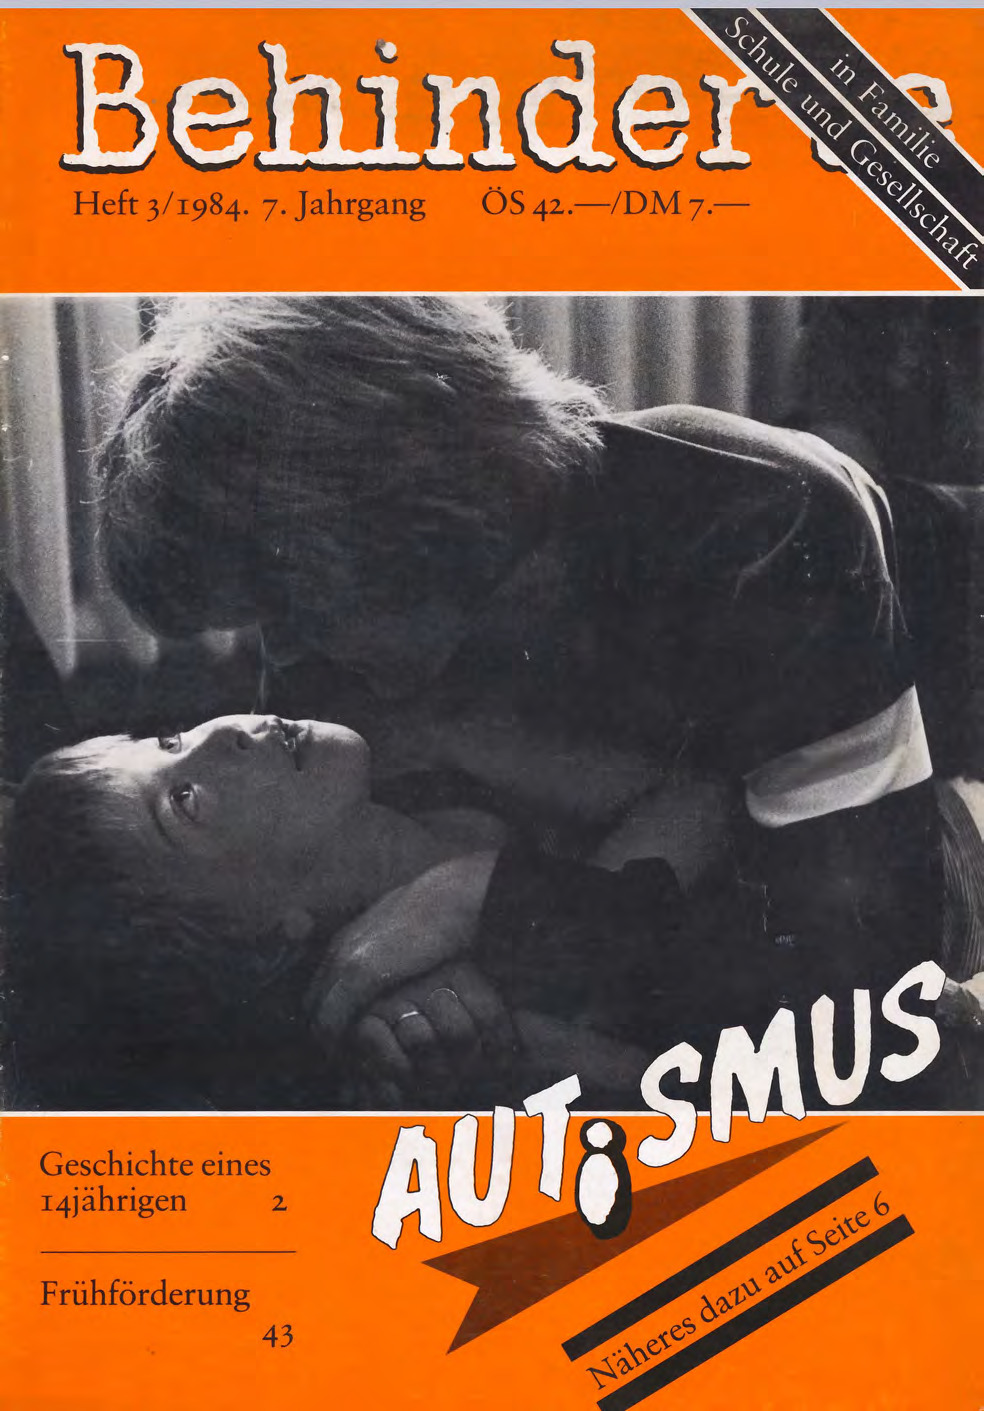 Titelbild der Zeitschrift BEHINDERTE MENSCHEN, Ausgabe 3/1984 "Autismus"